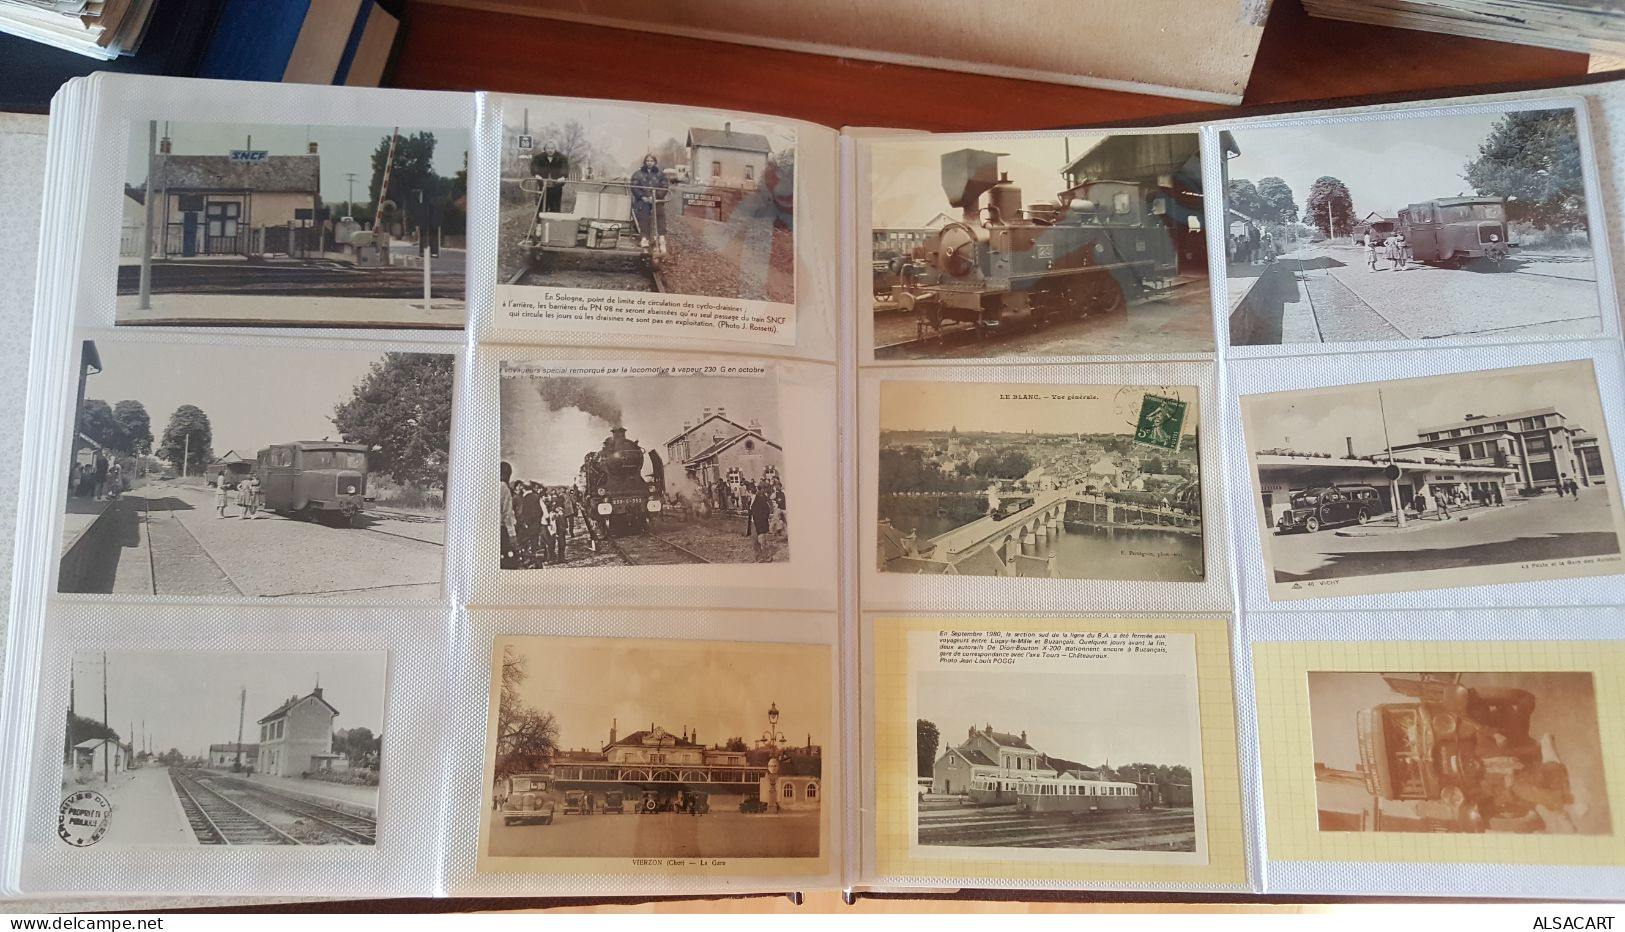 album avec plus de 300 documents , photos , cartes postales , photocopies chemin de fer , dep 18,36,45